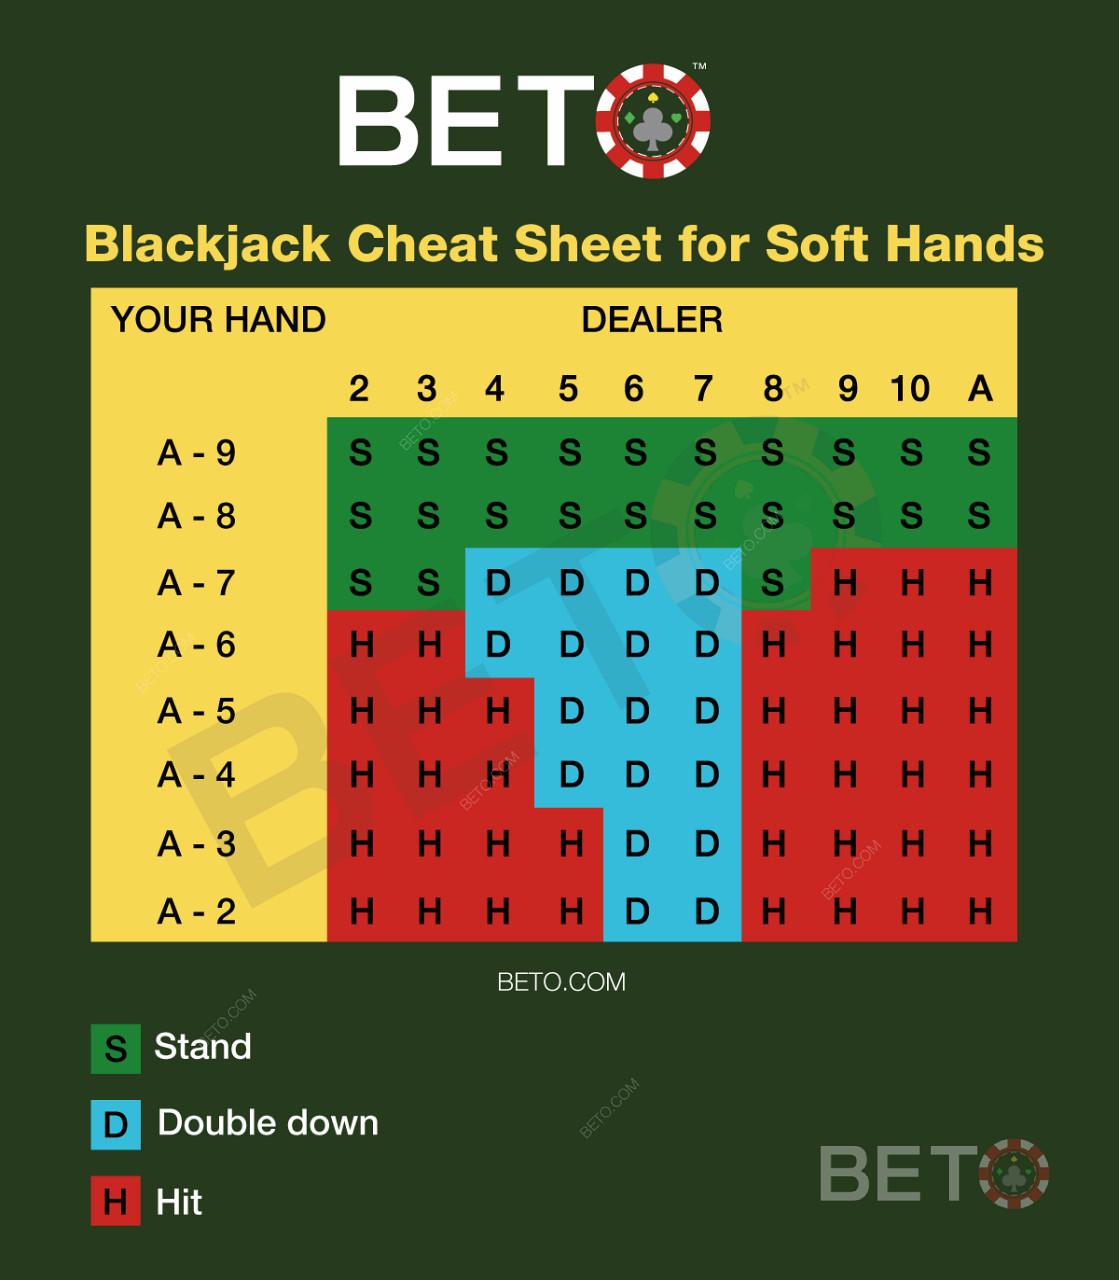 Tableau de blackjack pour les mains molles au blackjack